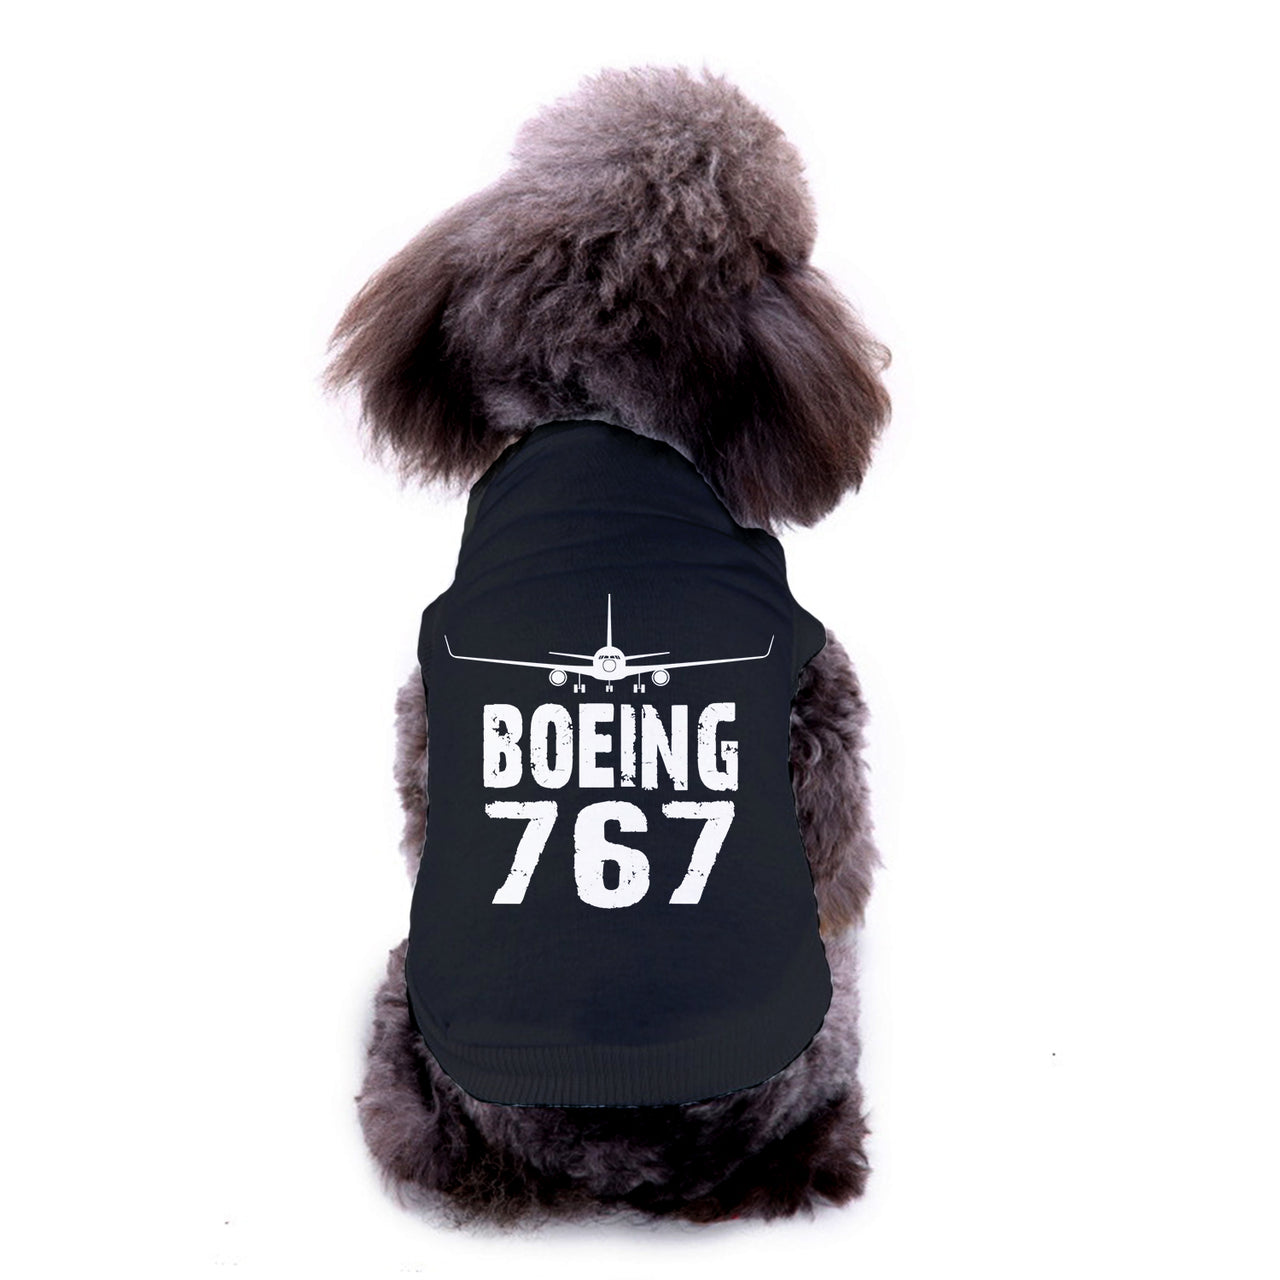 Boeing 767 & Plane Designed Dog Pet Vests